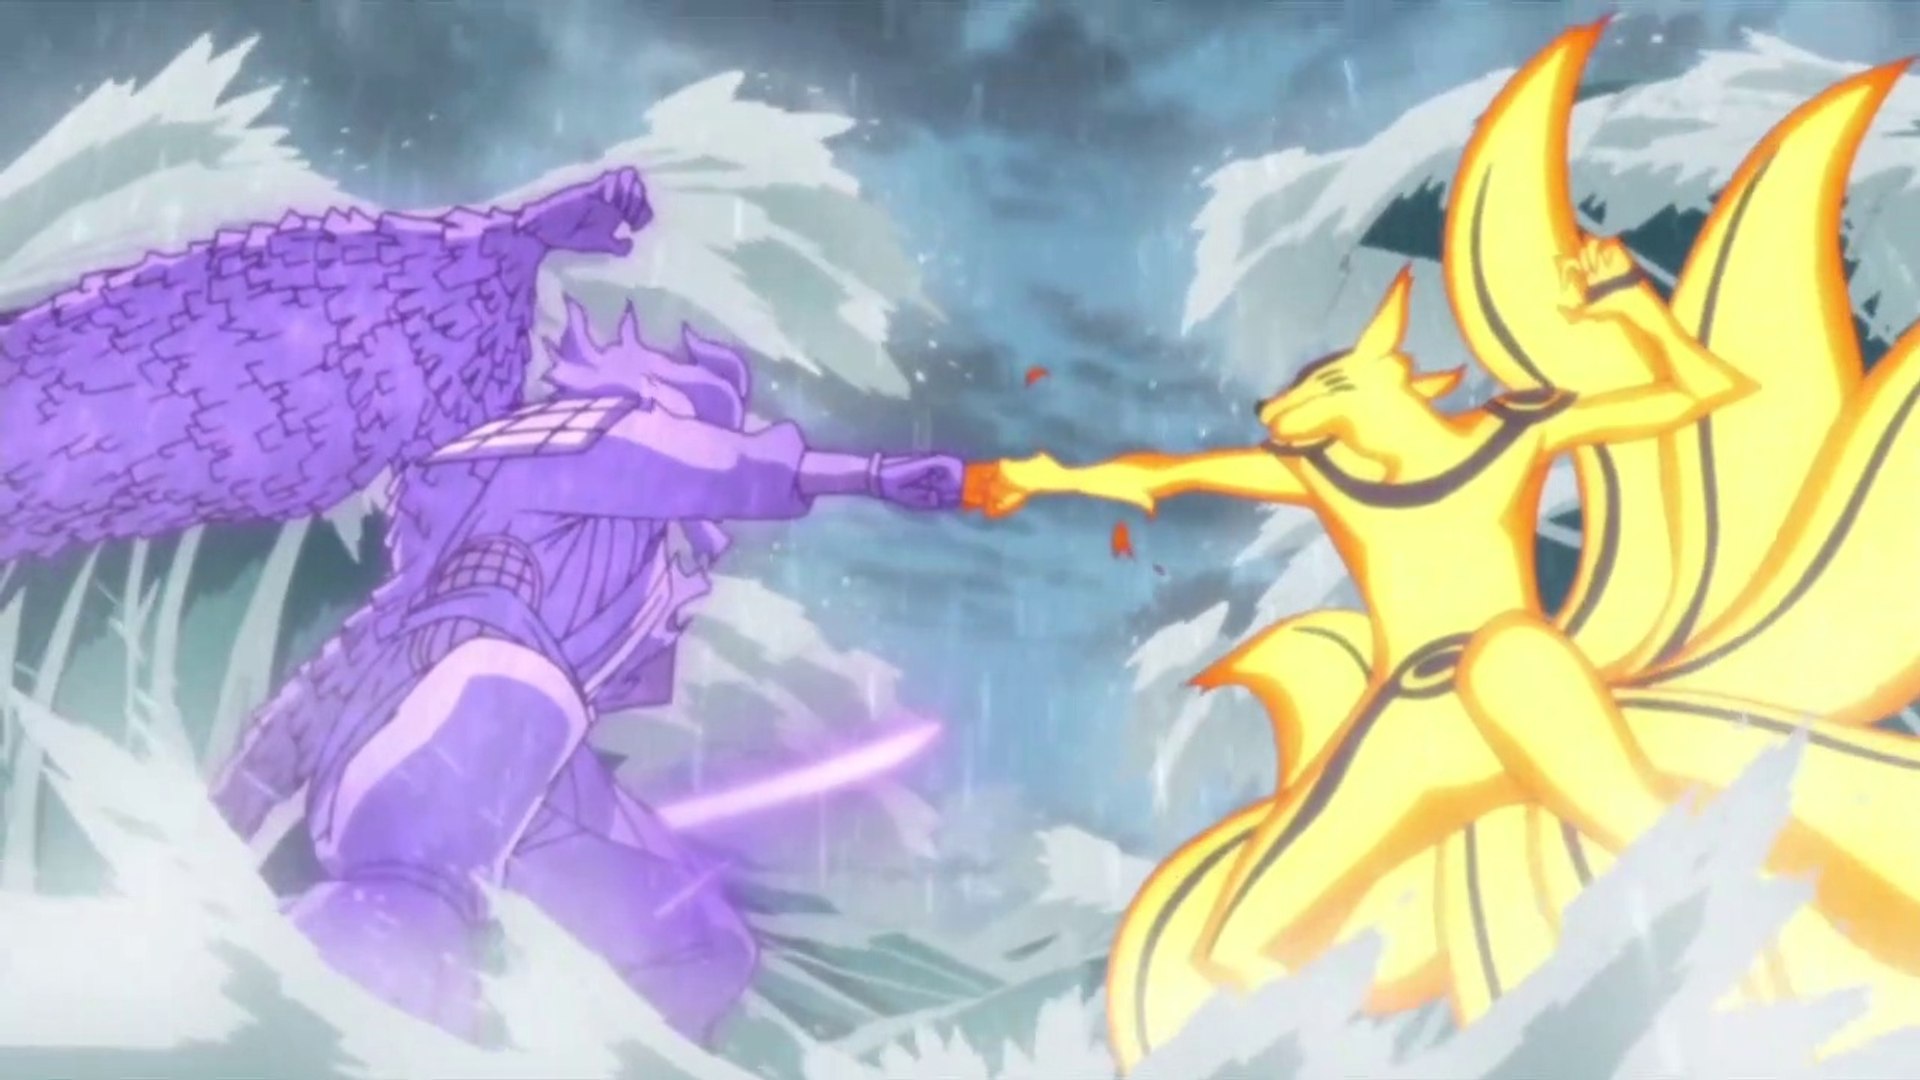 Naruto vs Sasuke Final Fight (Taijutsu) HD 